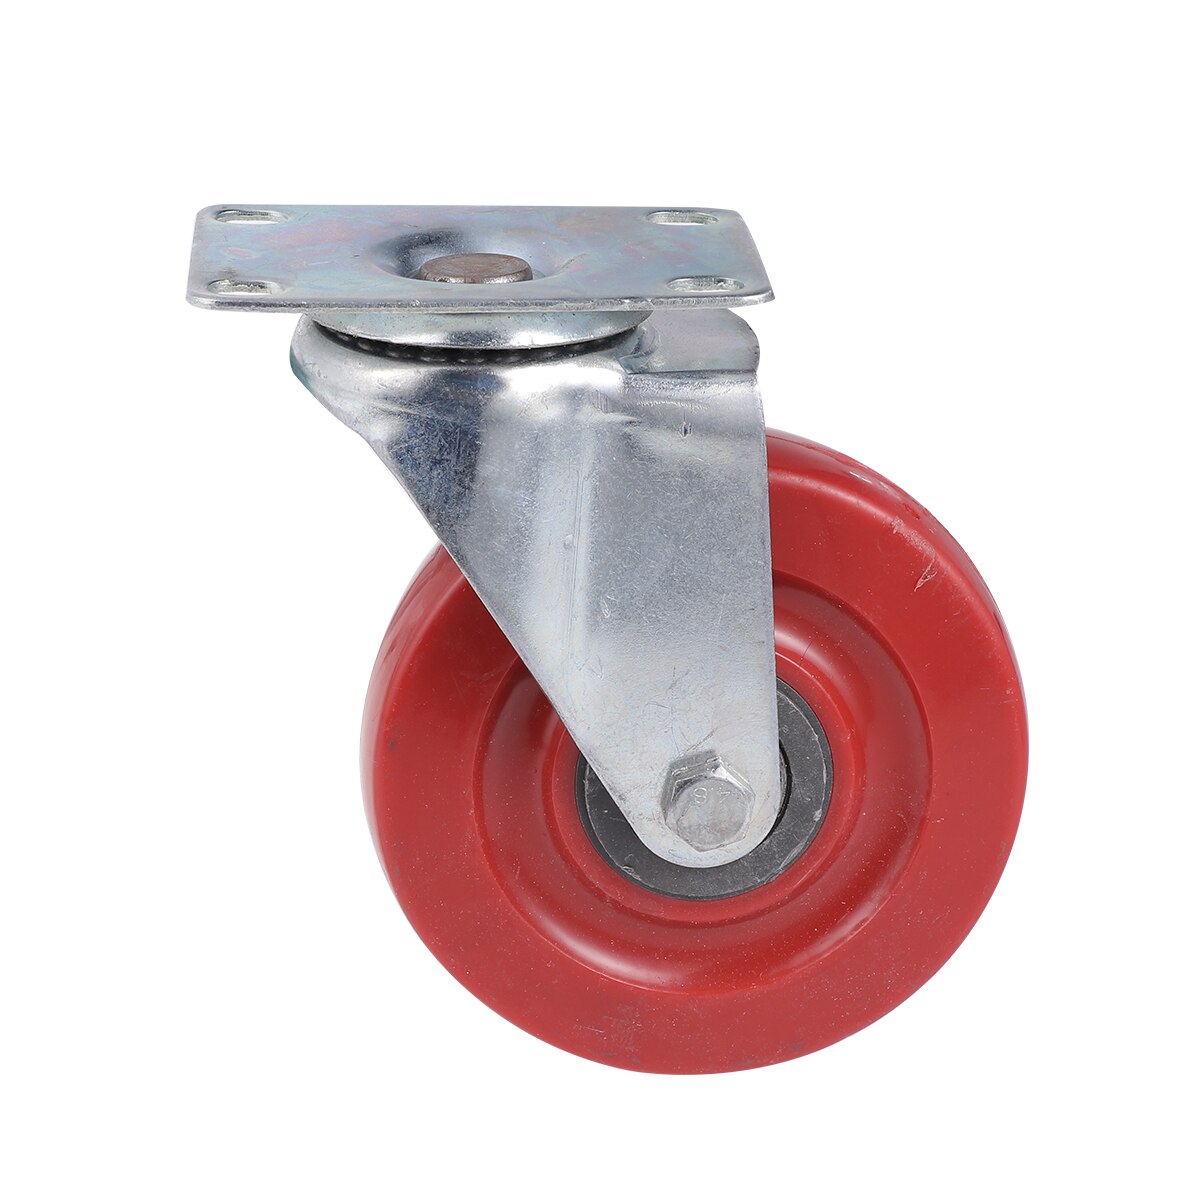 1 stk 3 tommer ,4 tommer  ,5 tommer jujube rød anti-vikling universalhjul dobbeltakse hjul med styrebremsning (rød + sølv ) a30: 5 tommer